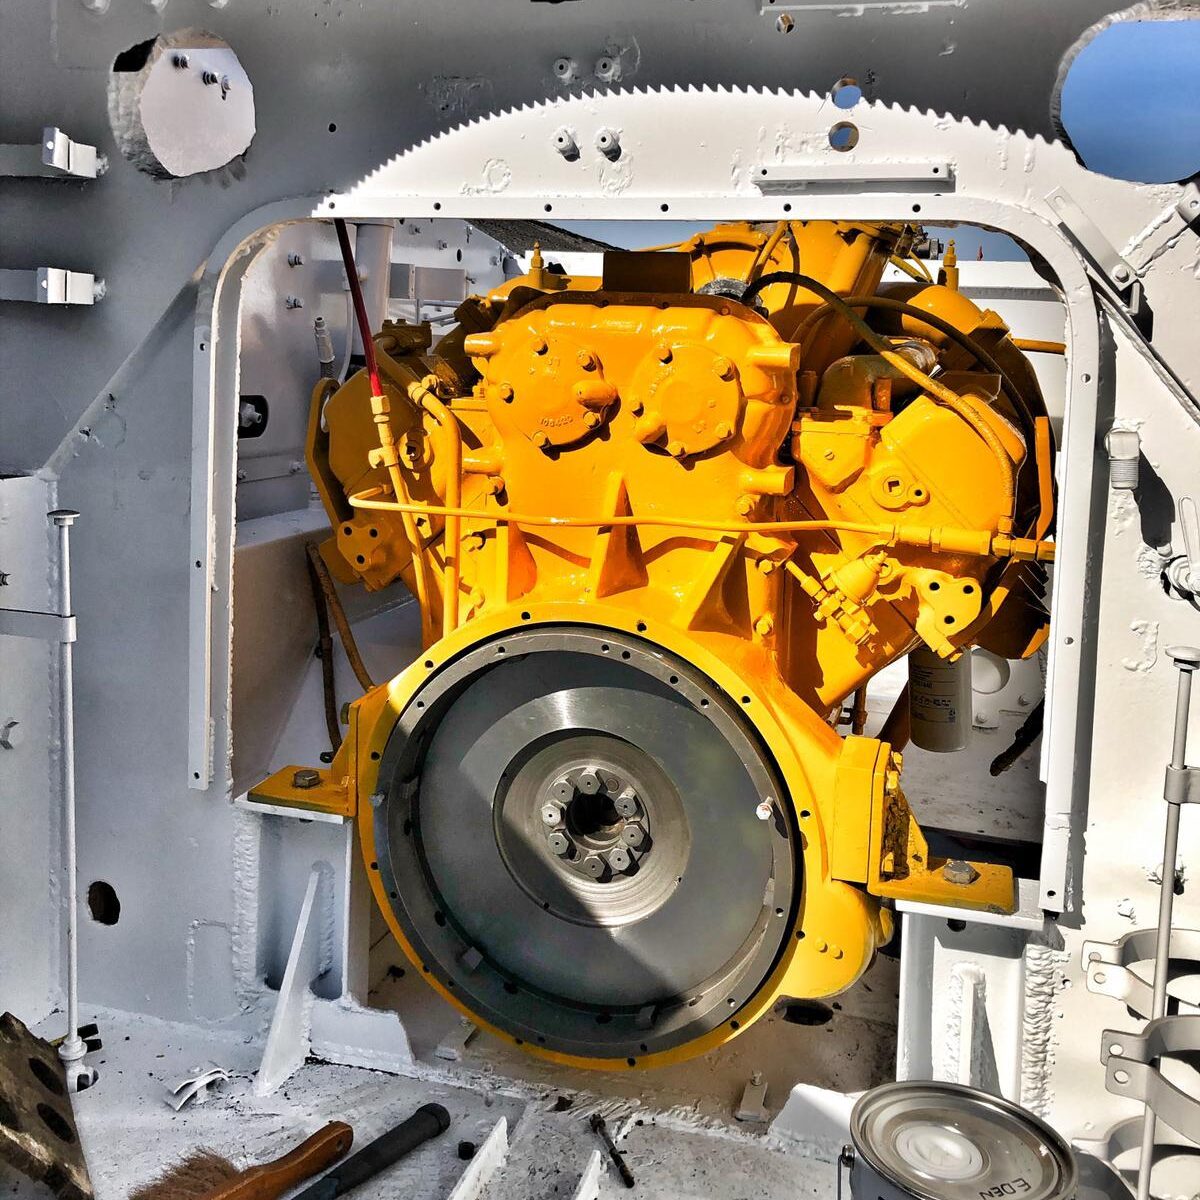 VT8 engine inside Sherman.